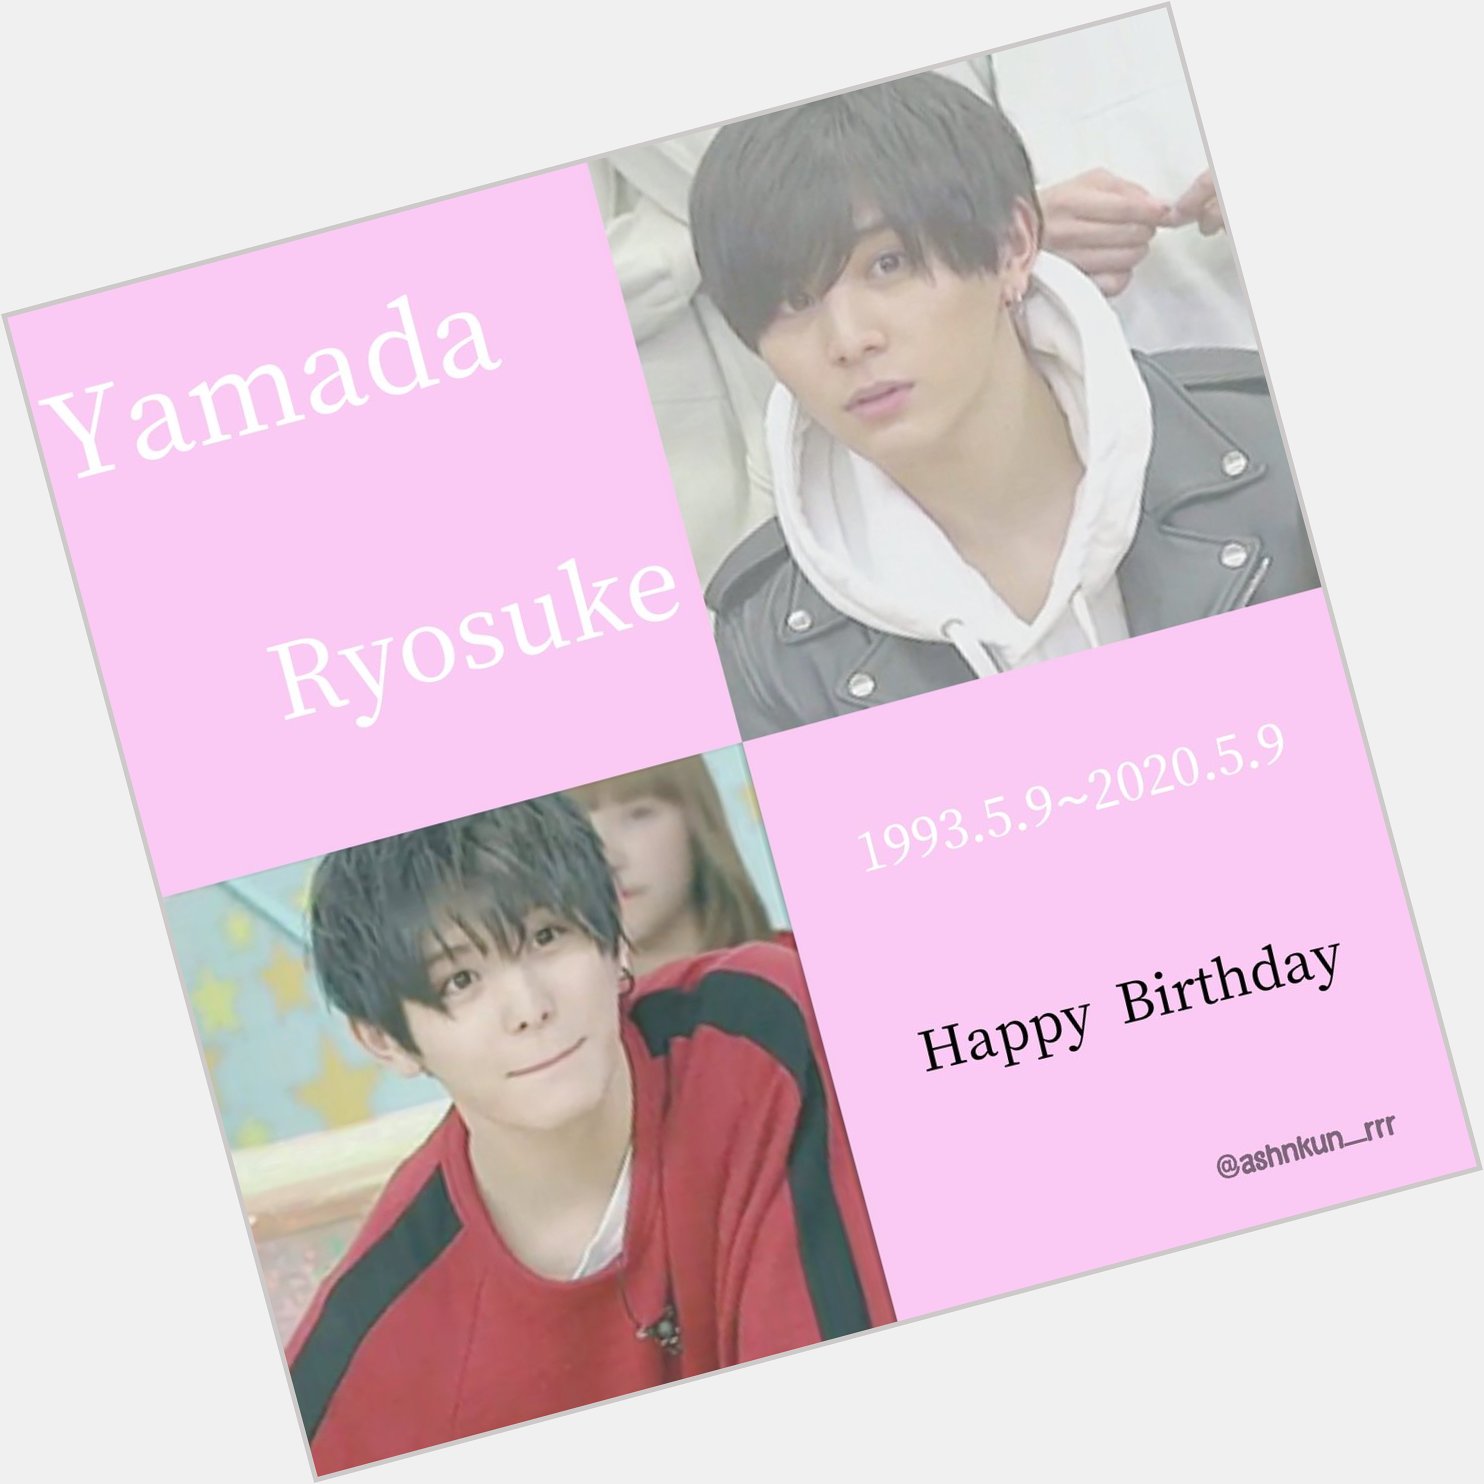 Yamada Ryosuke

Happy Birthday  